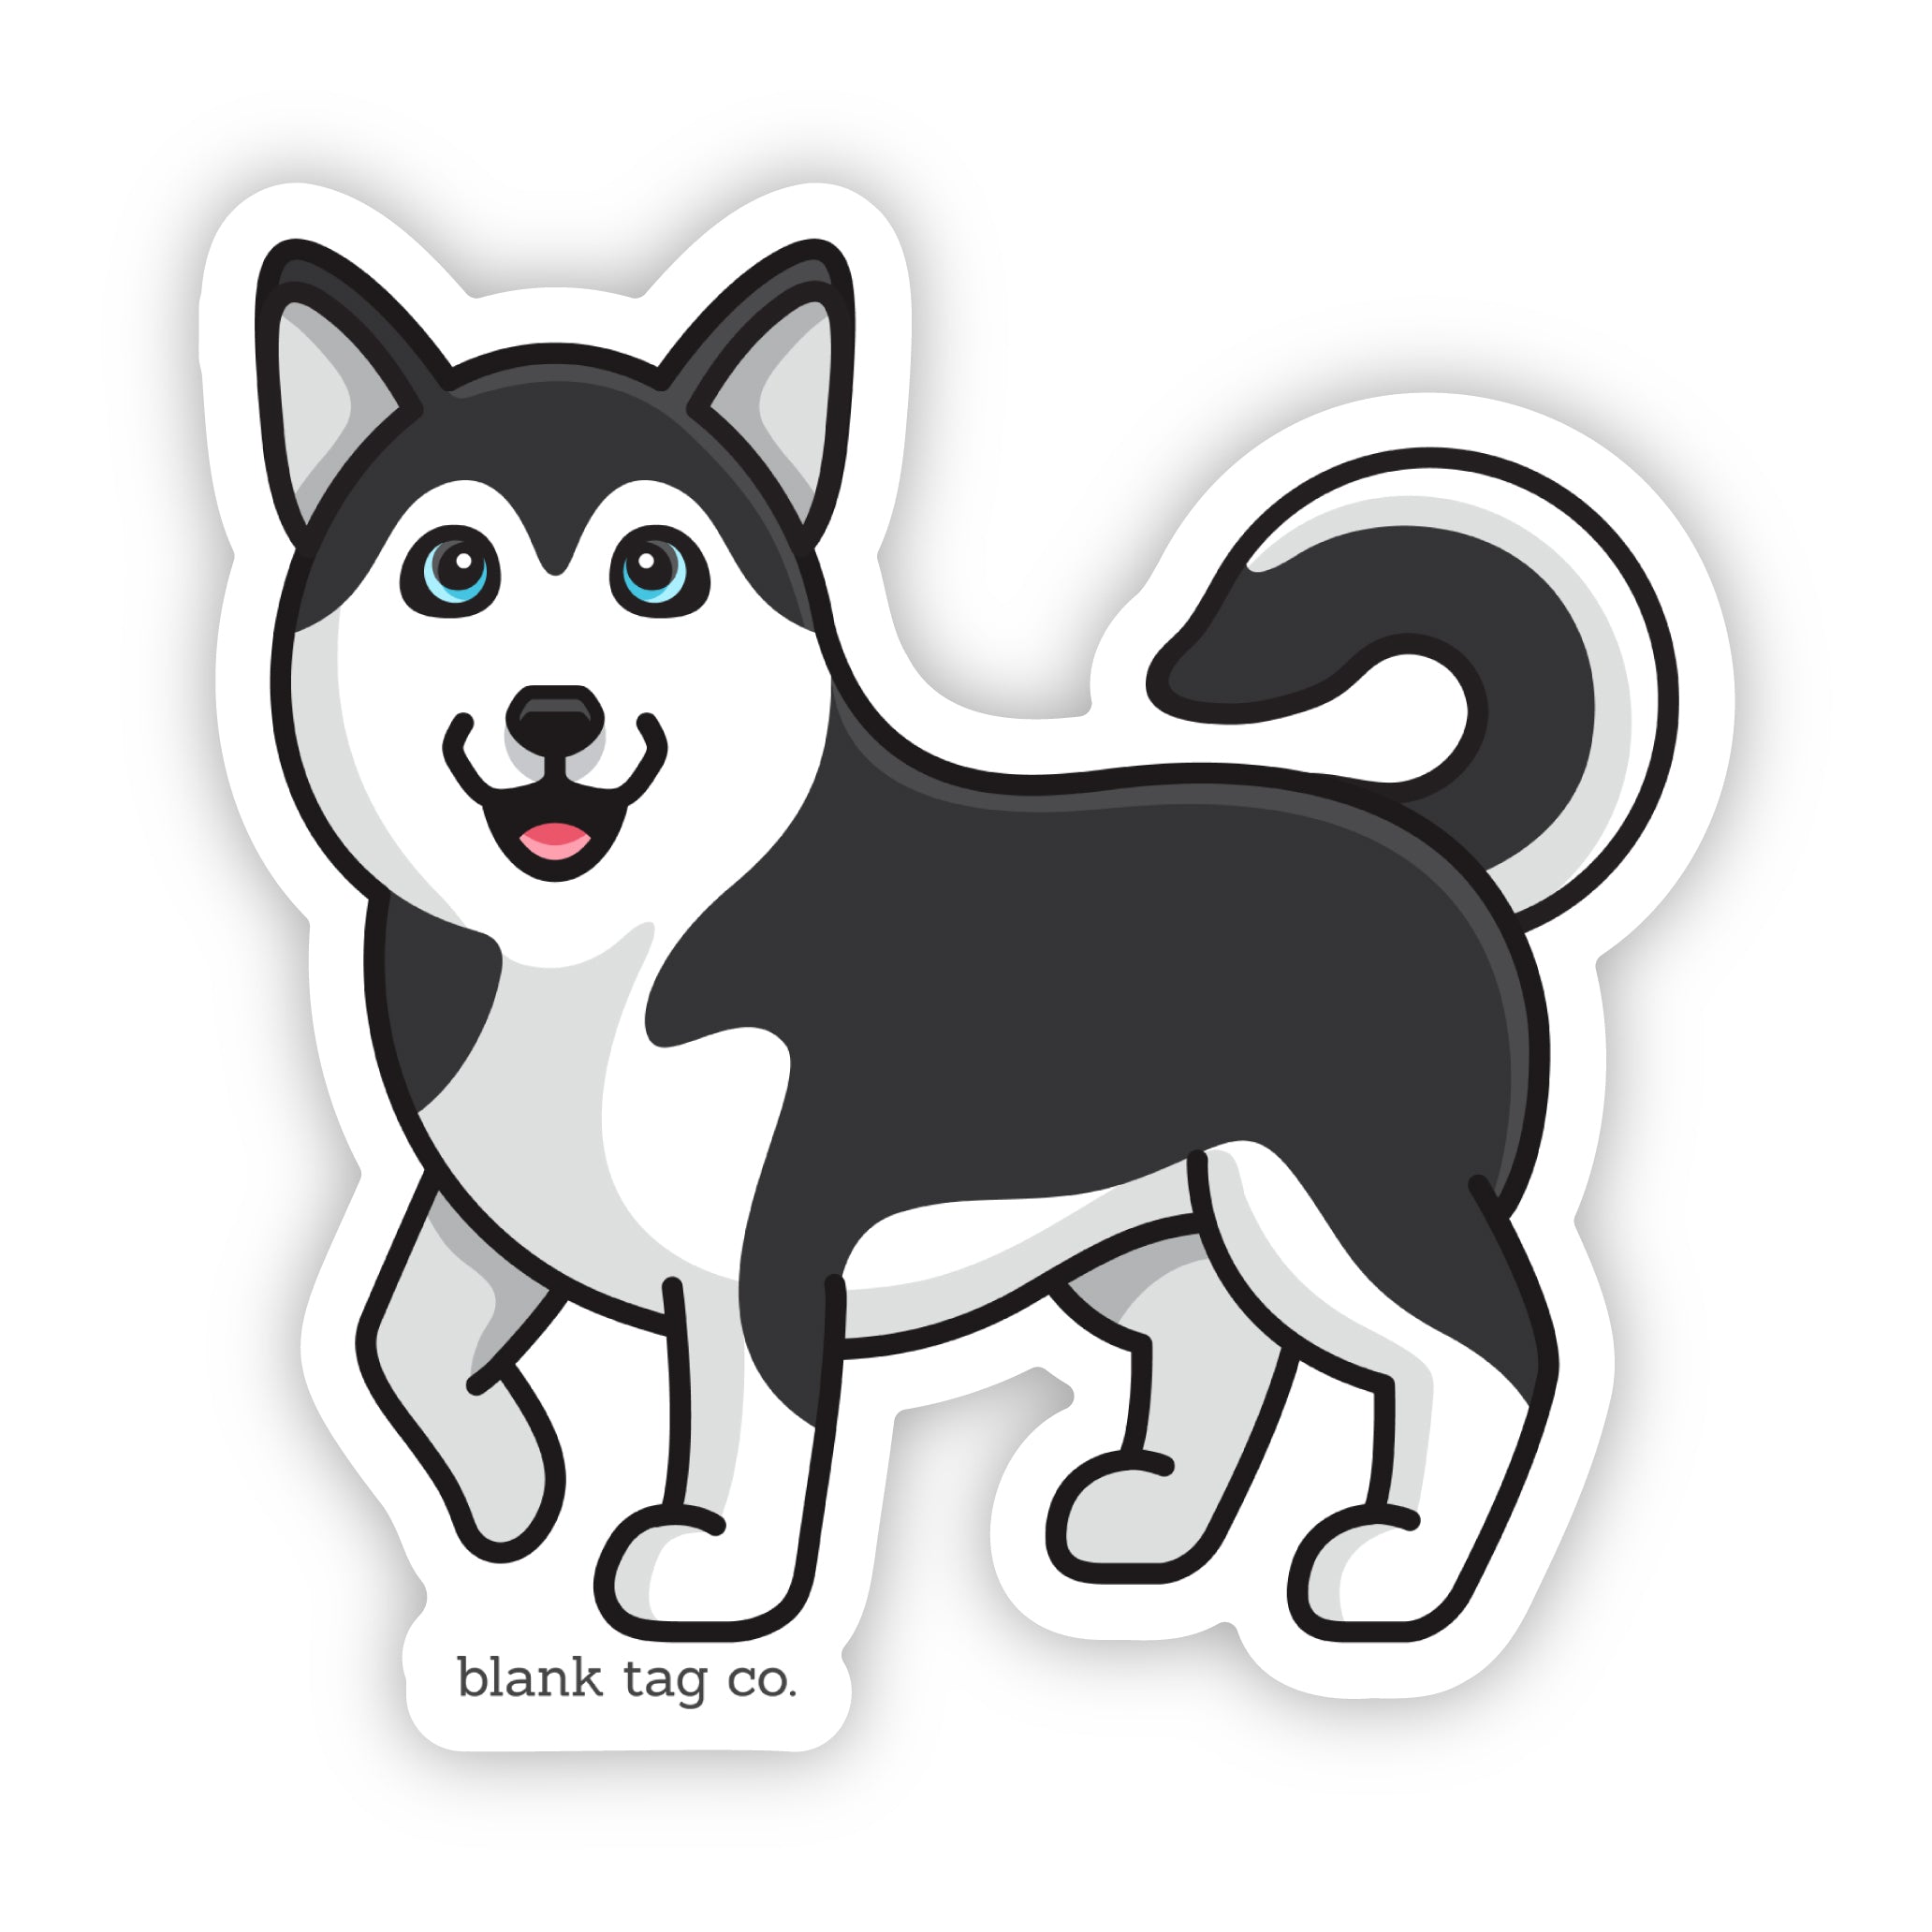 The Husky Sticker